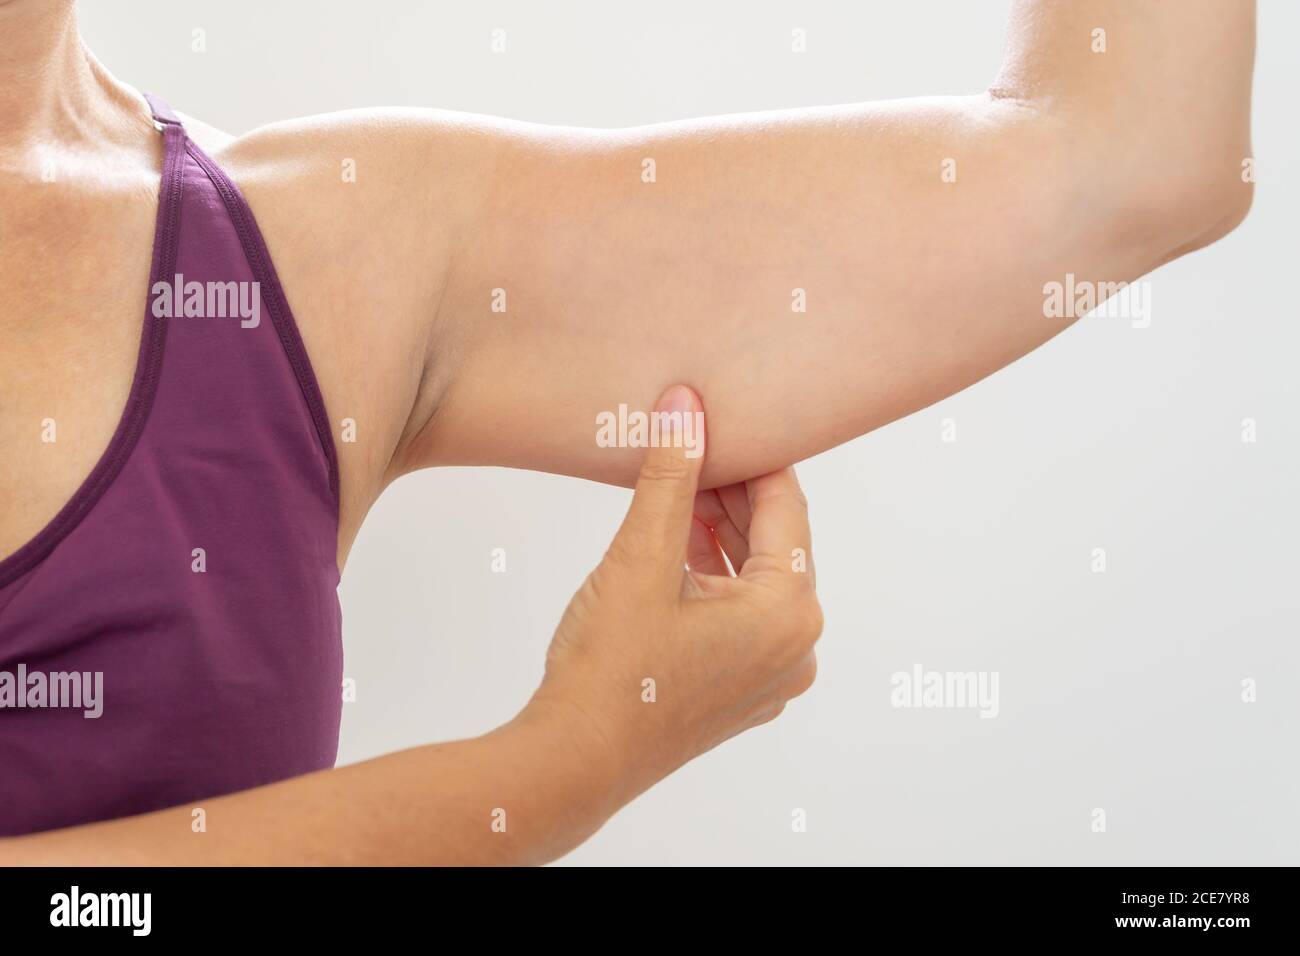 Mujer madura pellizcando brazo flabby, cuidado corporal y concepto de fitness Foto de stock